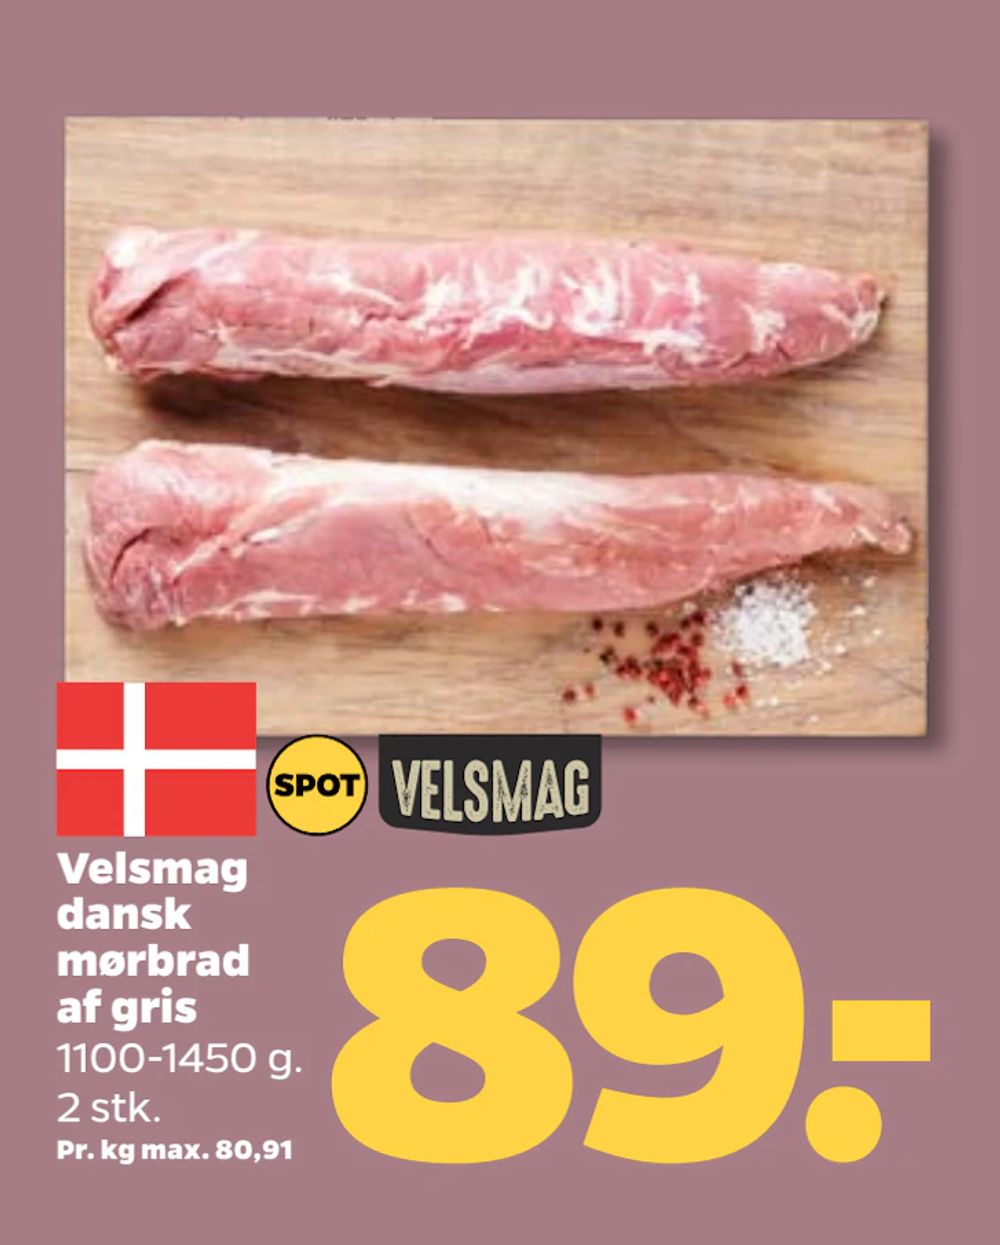 Tilbud på Velsmag dansk mørbrad af gris fra Netto til 89 kr.